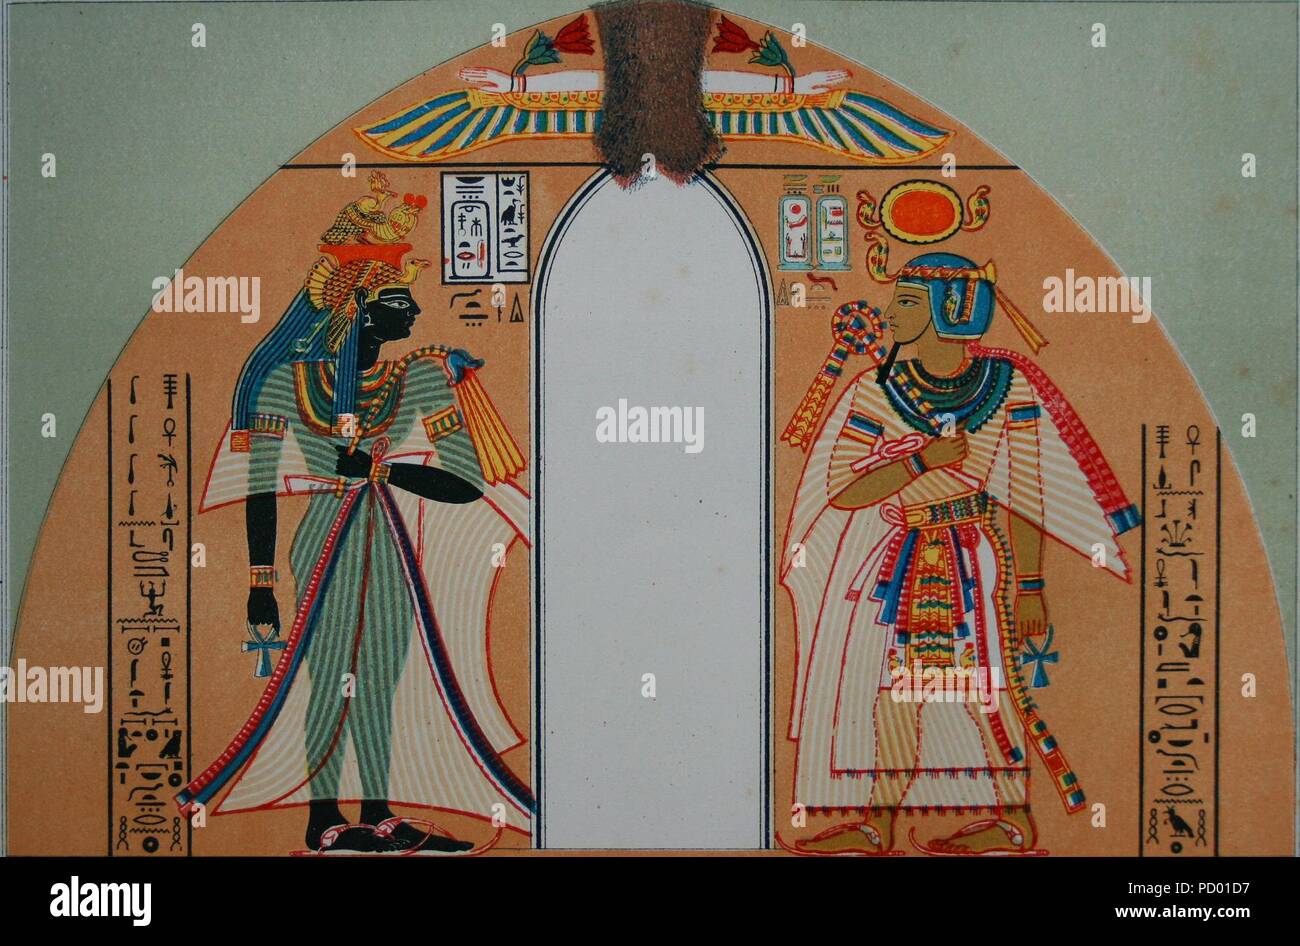 Amenhotep I. Stock Photo